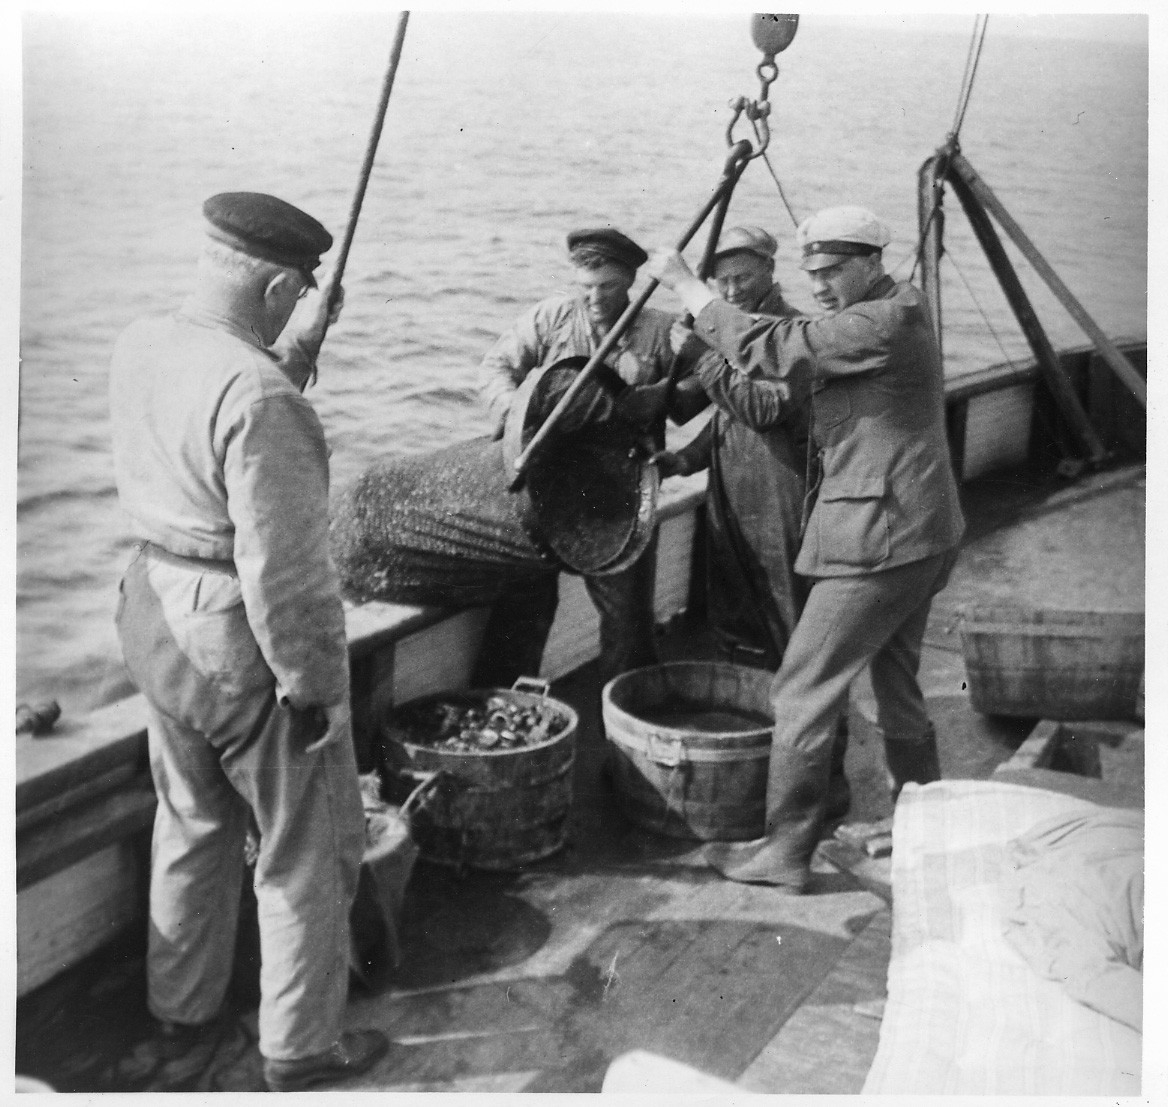 'Akka-expeditionen sommaren 1931: ::  :: 4 st män på Skandias båtdäck. Leonard Axel Jägerskiöld med ryggden mot kameran. De 3 andra männen arbetar med att tömma ringskrapan. ::  :: Ingår i serie med fotonr. 2182-2234.'